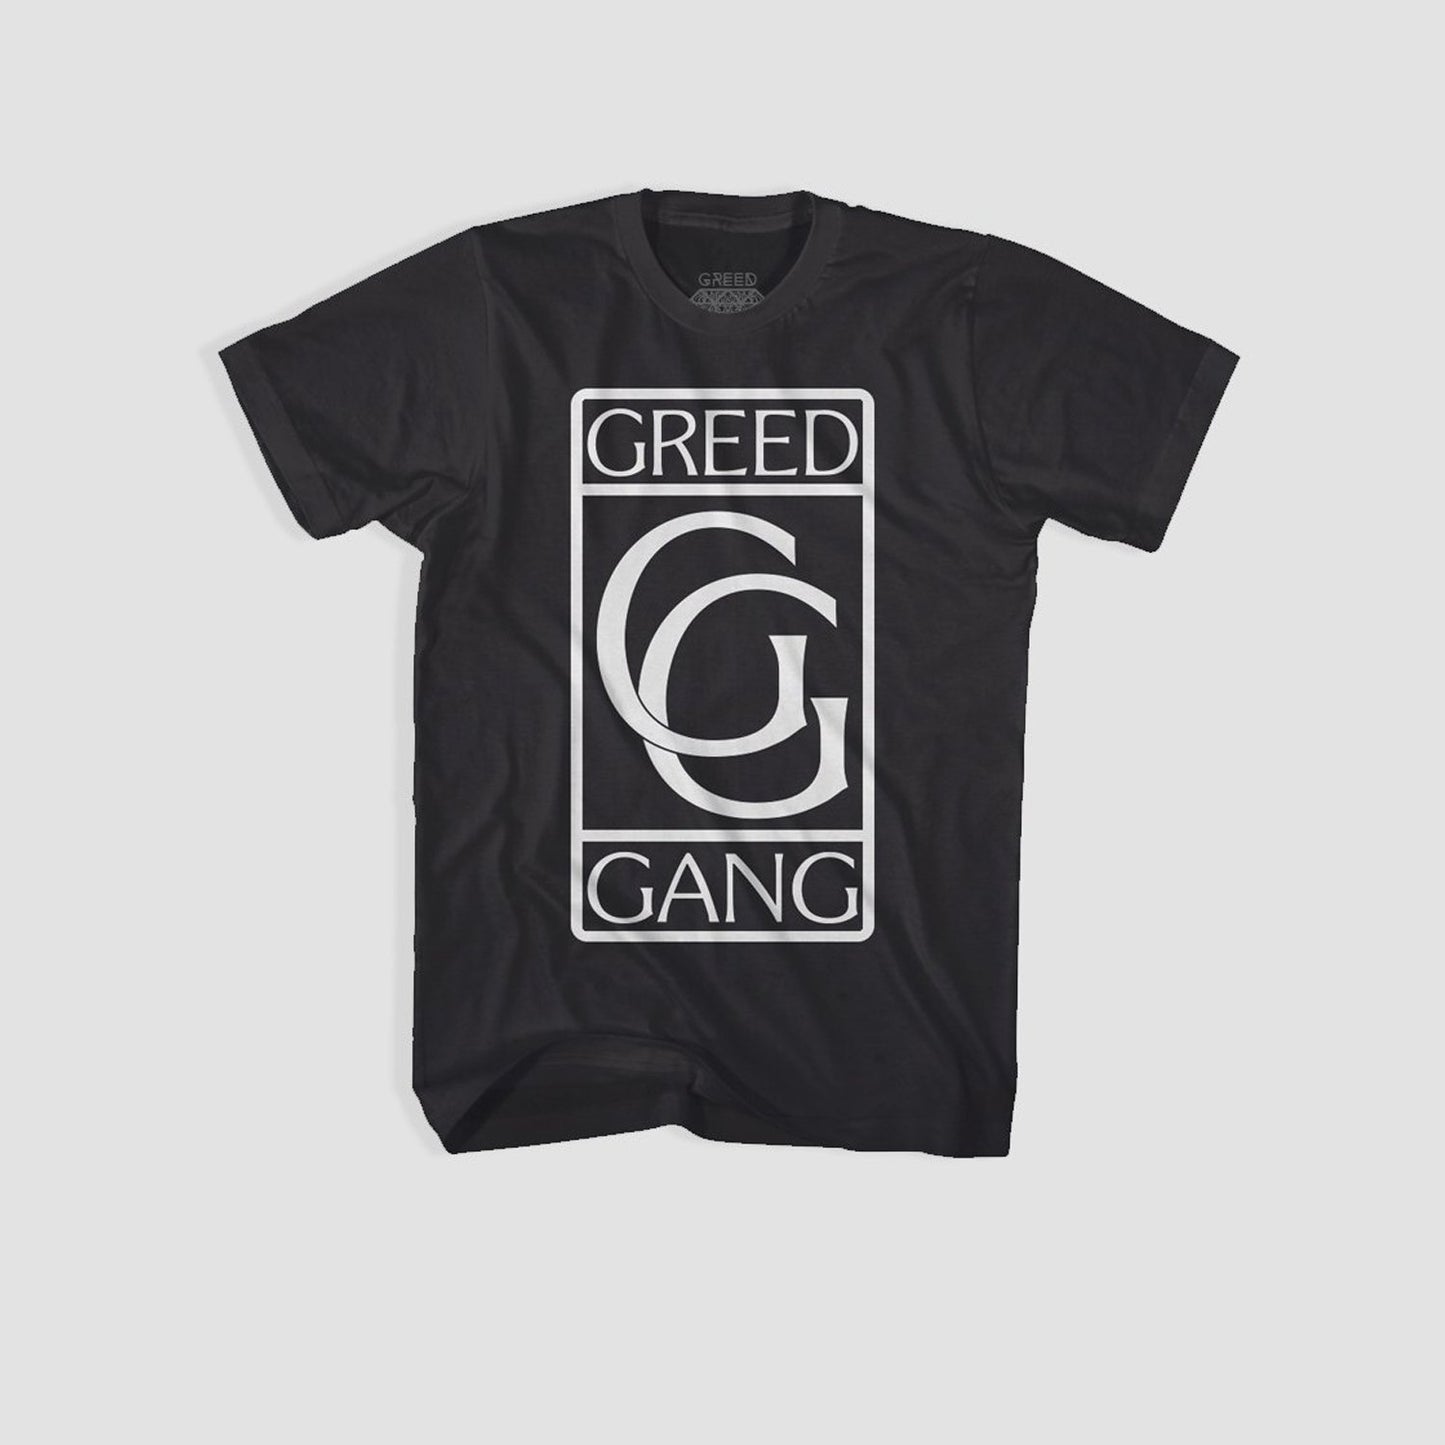 GREED Gang Tee